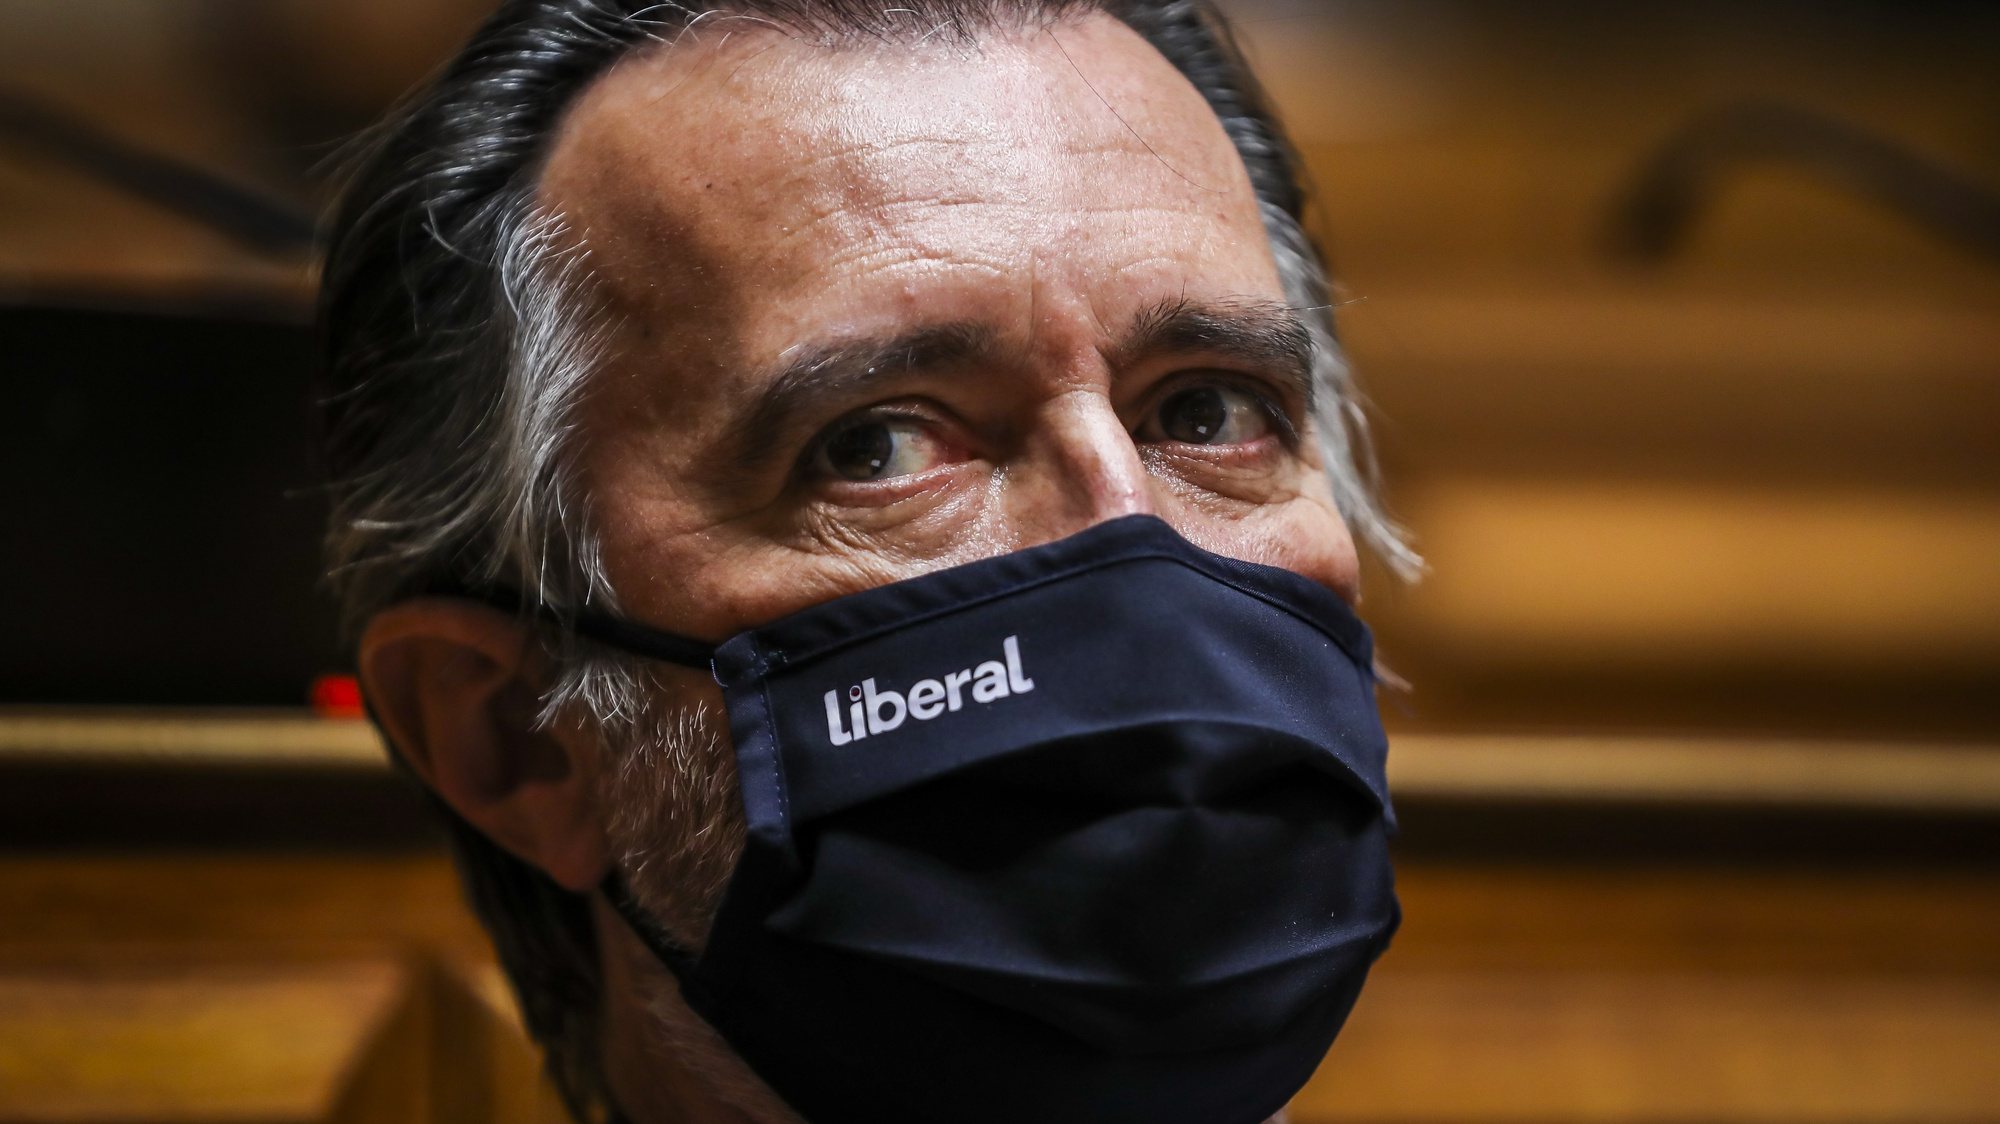 O deputado da Iniciativa Liberal, João Cotrim Figueiredo, durante um debate no Parlamento, 04 de novembro de 2020. JOSÉ SENA GOULÃO